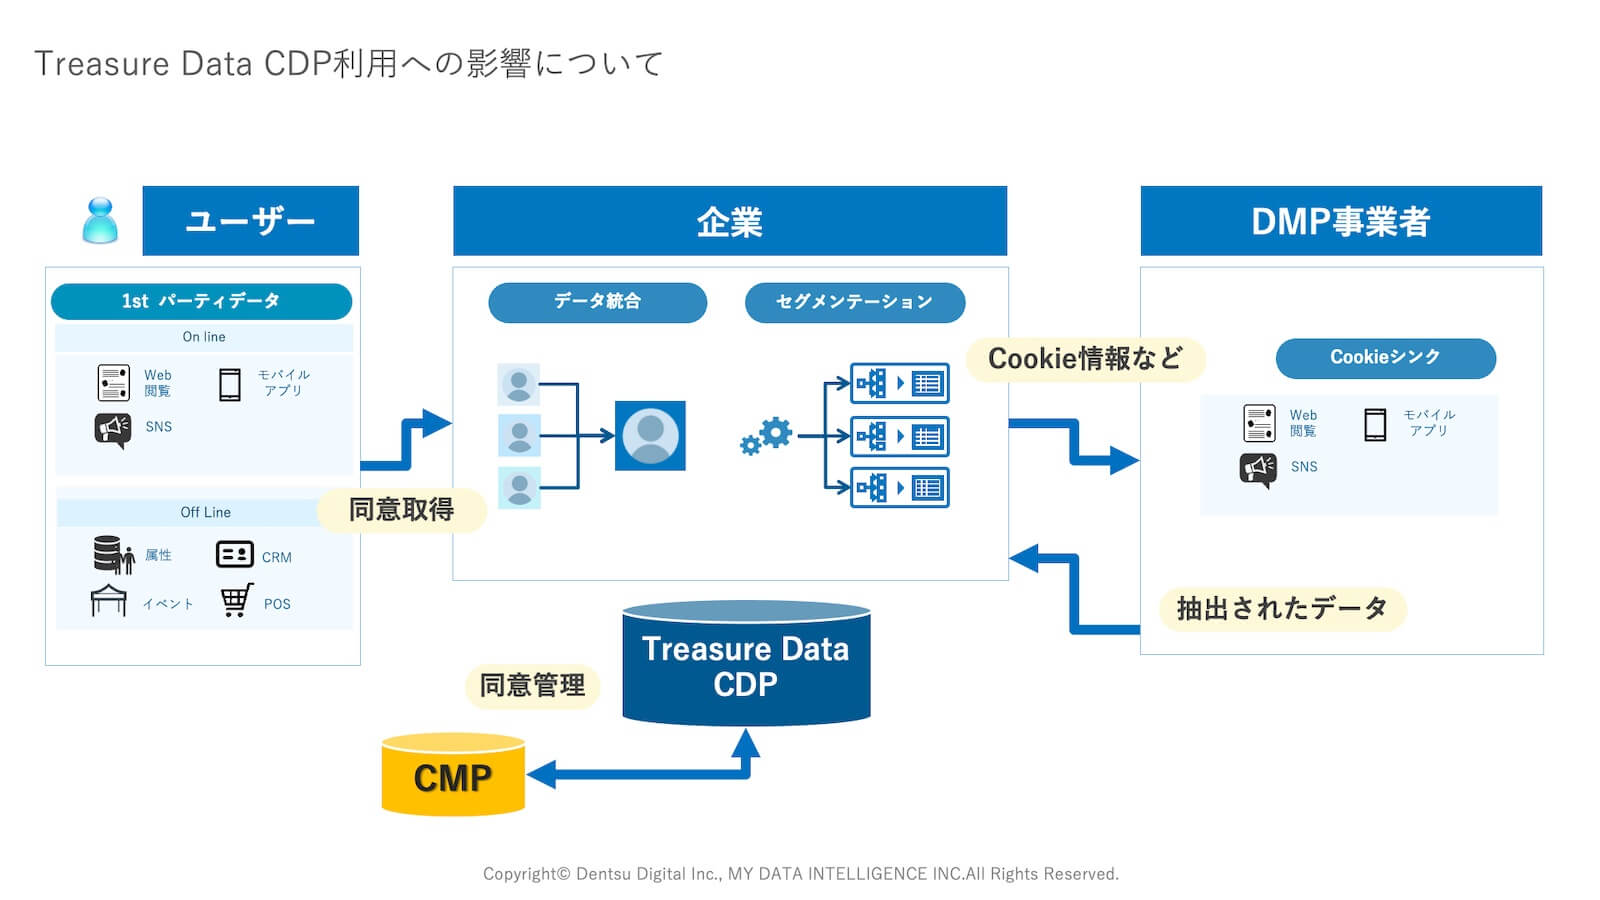 Treasure Data CDPとCMP